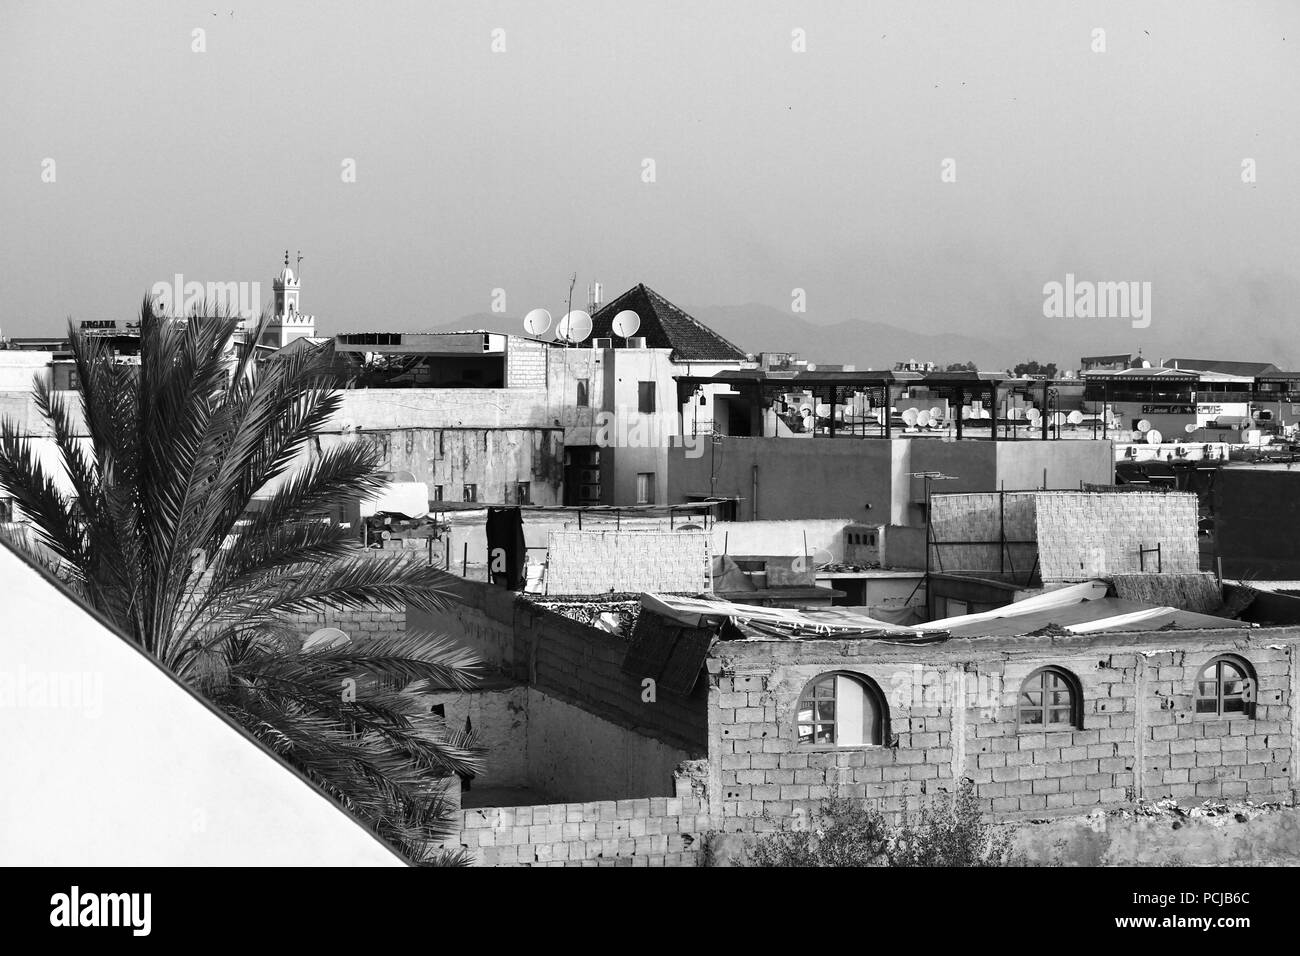 Medina di Marrakech, tetti della città vecchia, panorama, edifici, palm, moschea tower, vista sulle terrazze. In bianco e nero. Monocromatico. Città araba. Il Marocco. Foto Stock